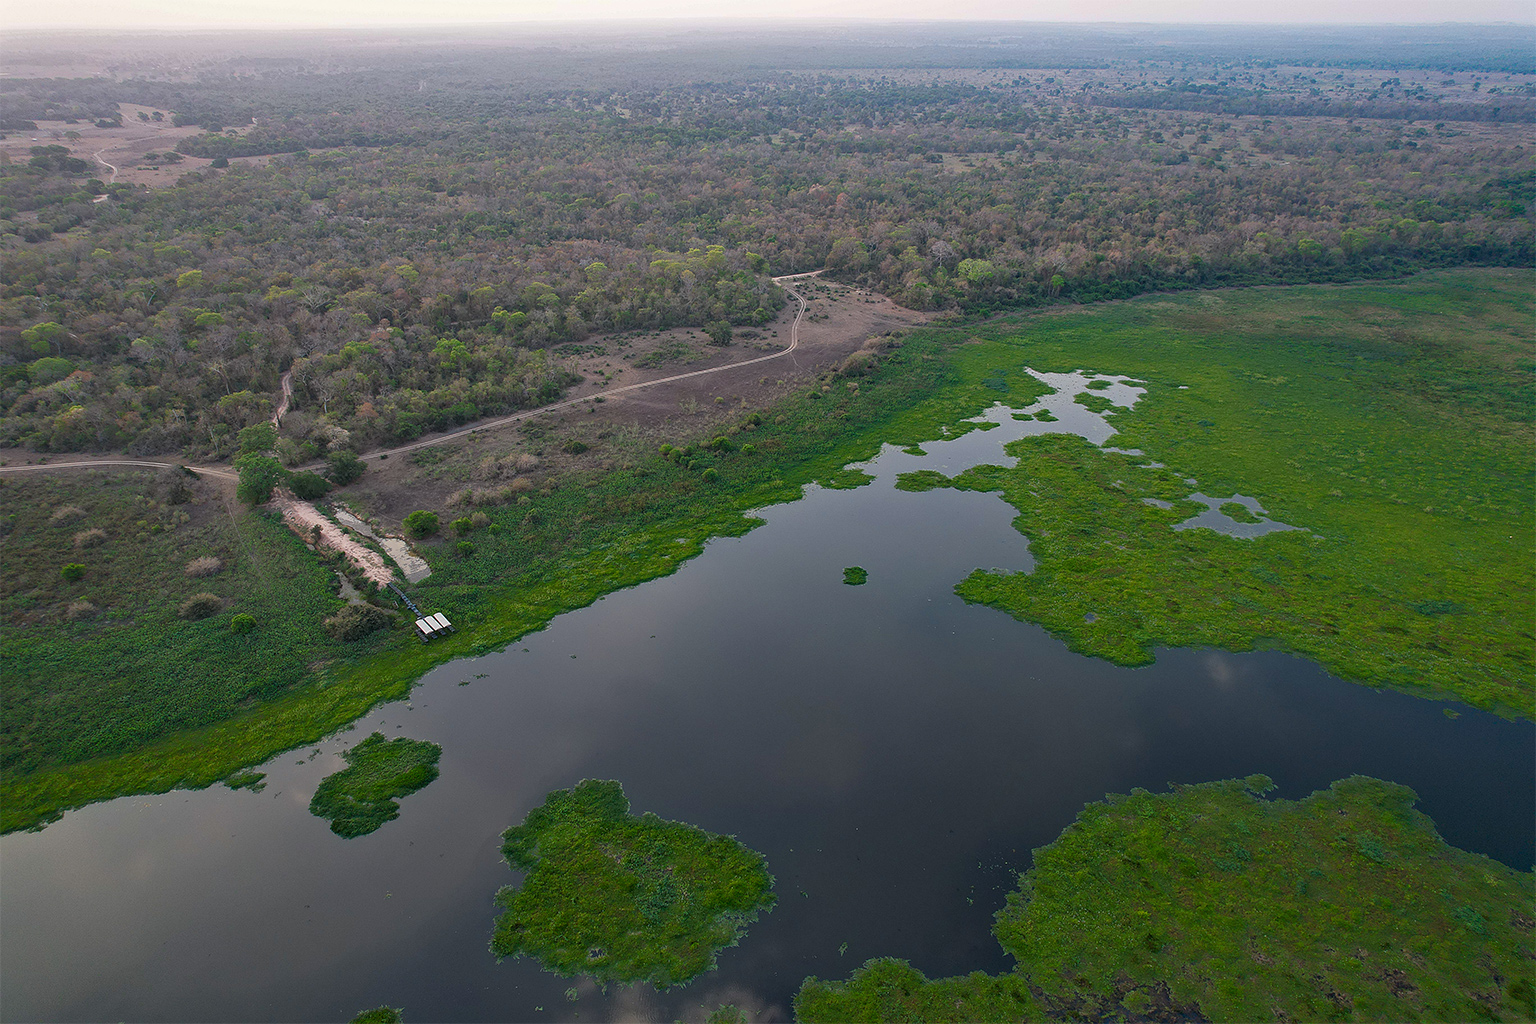 Aerial shot of the Pantanal wetlands.